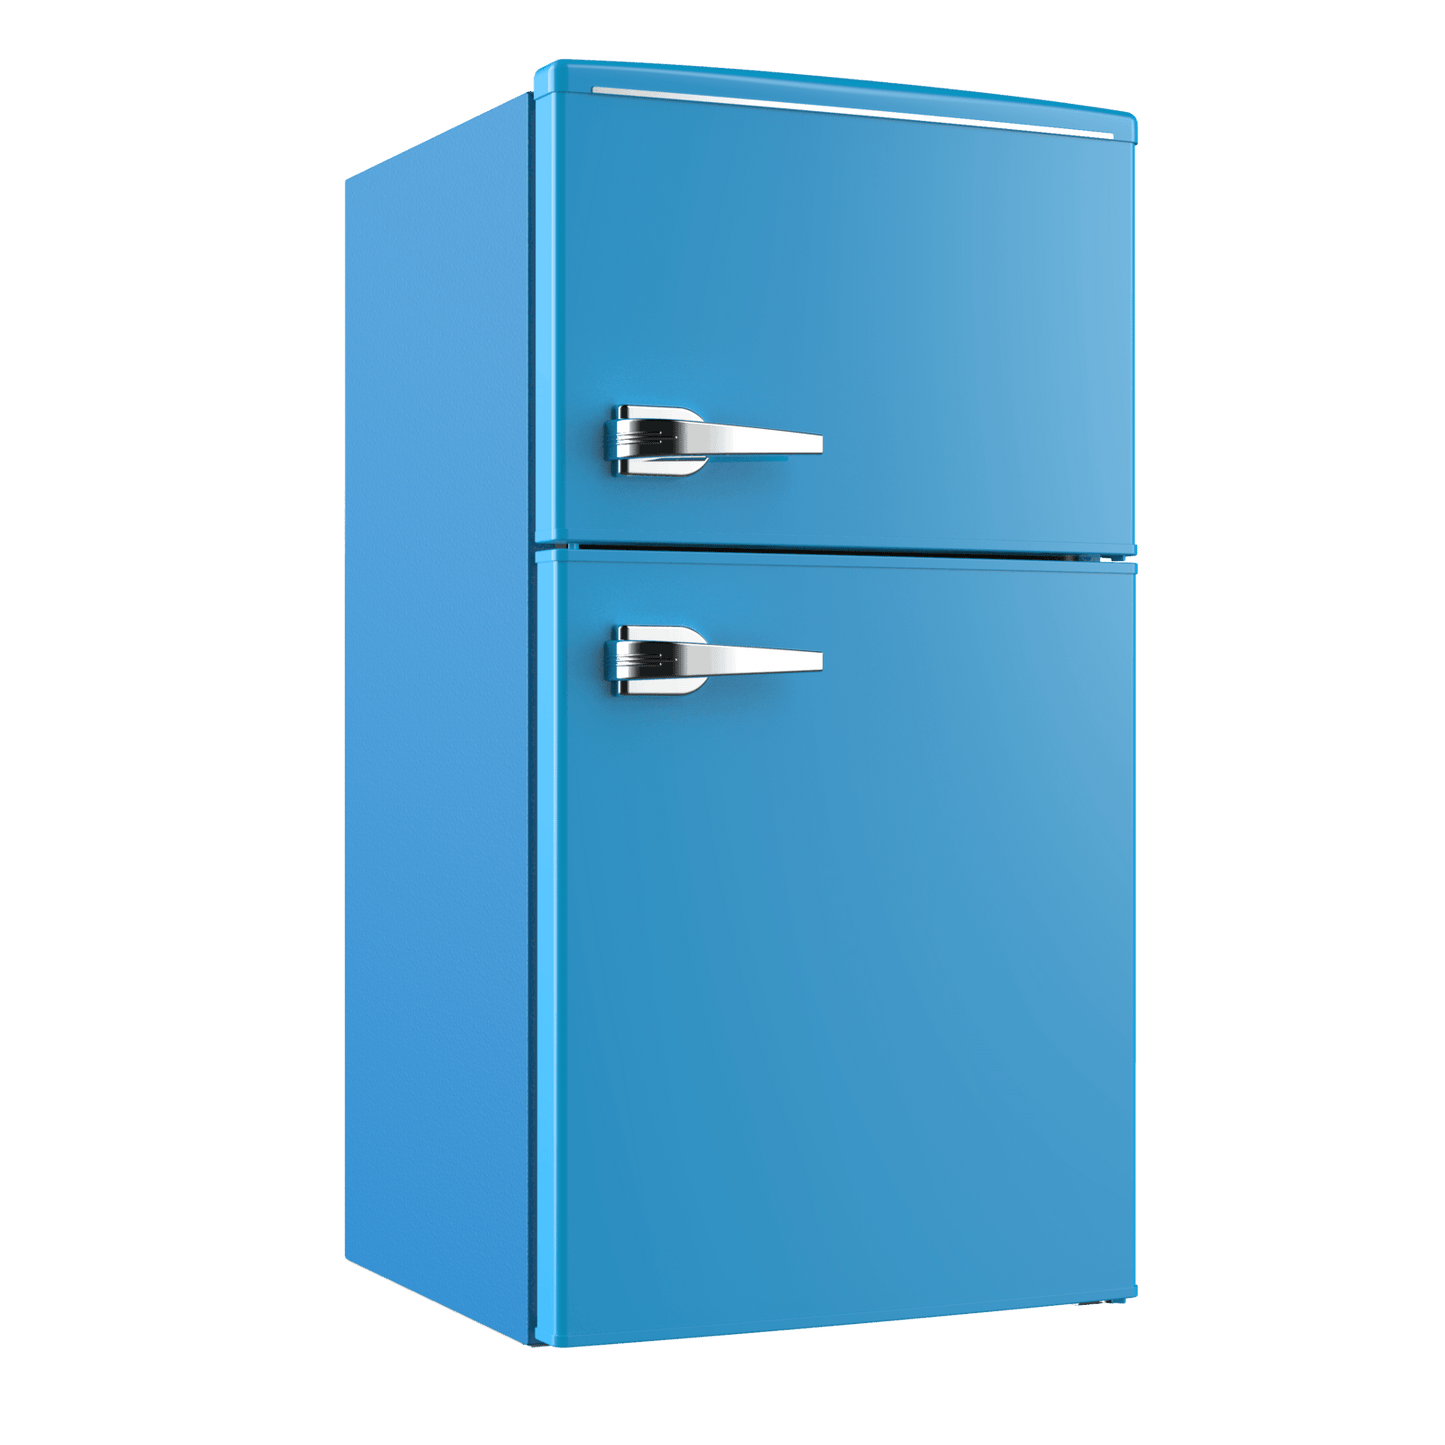 Avanti RMRT30X6BLIS 3.0 Cu. Ft. Retro Compact Refrigerator